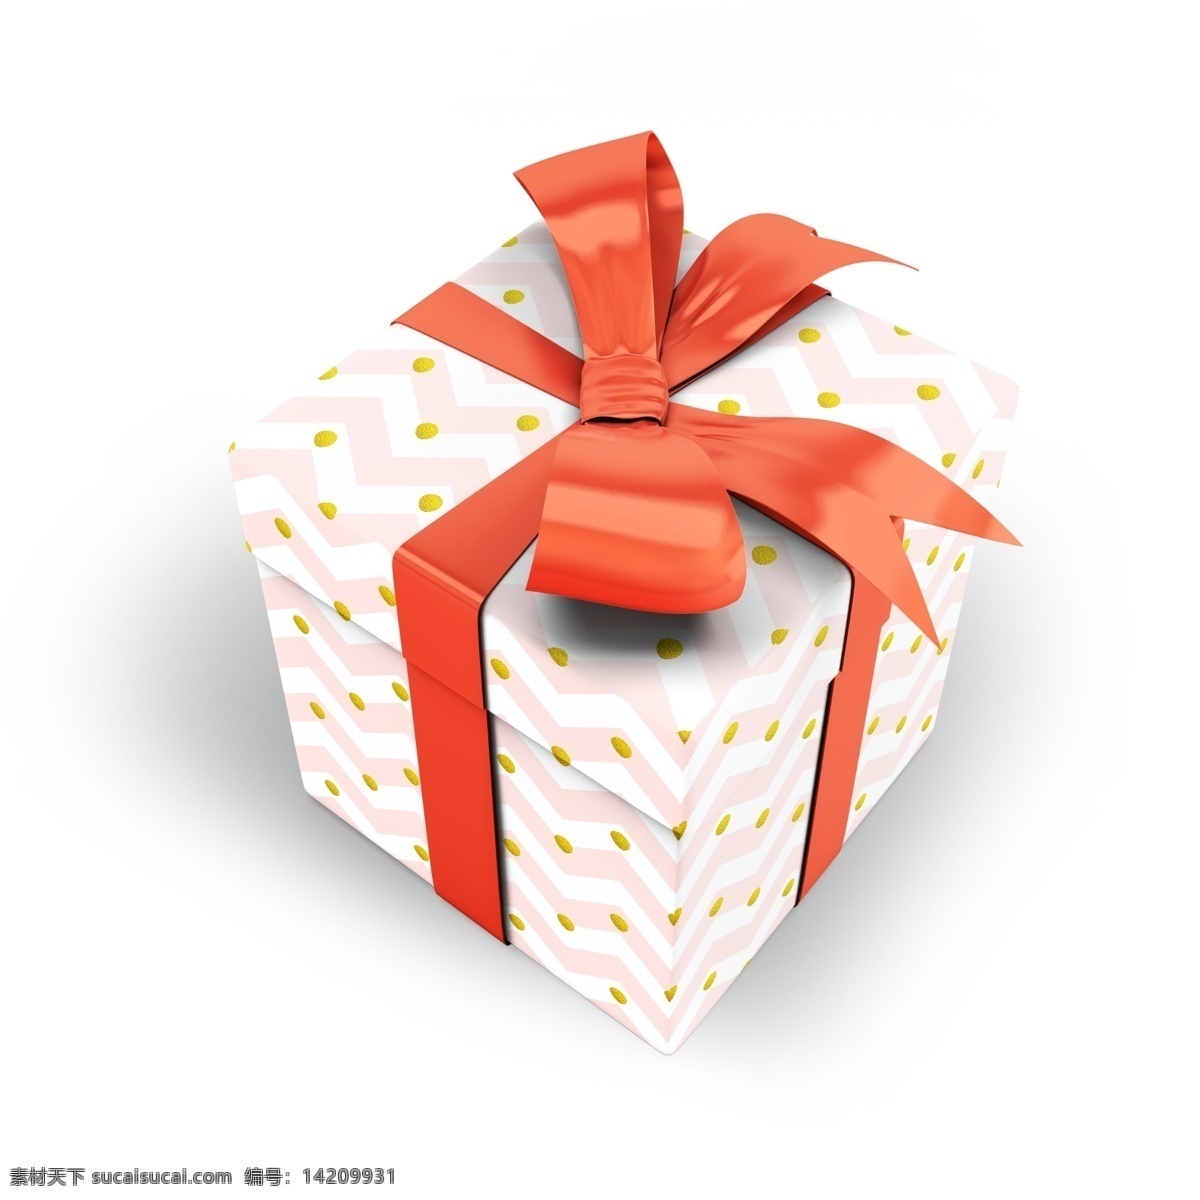 蛋糕盒样机 礼物盒 礼盒 礼盒包装 礼盒颜色 礼物盒装饰 礼物盒效果 礼物盒展示 包装 礼物 礼物盒包装 样机 产品效果图 vi设计